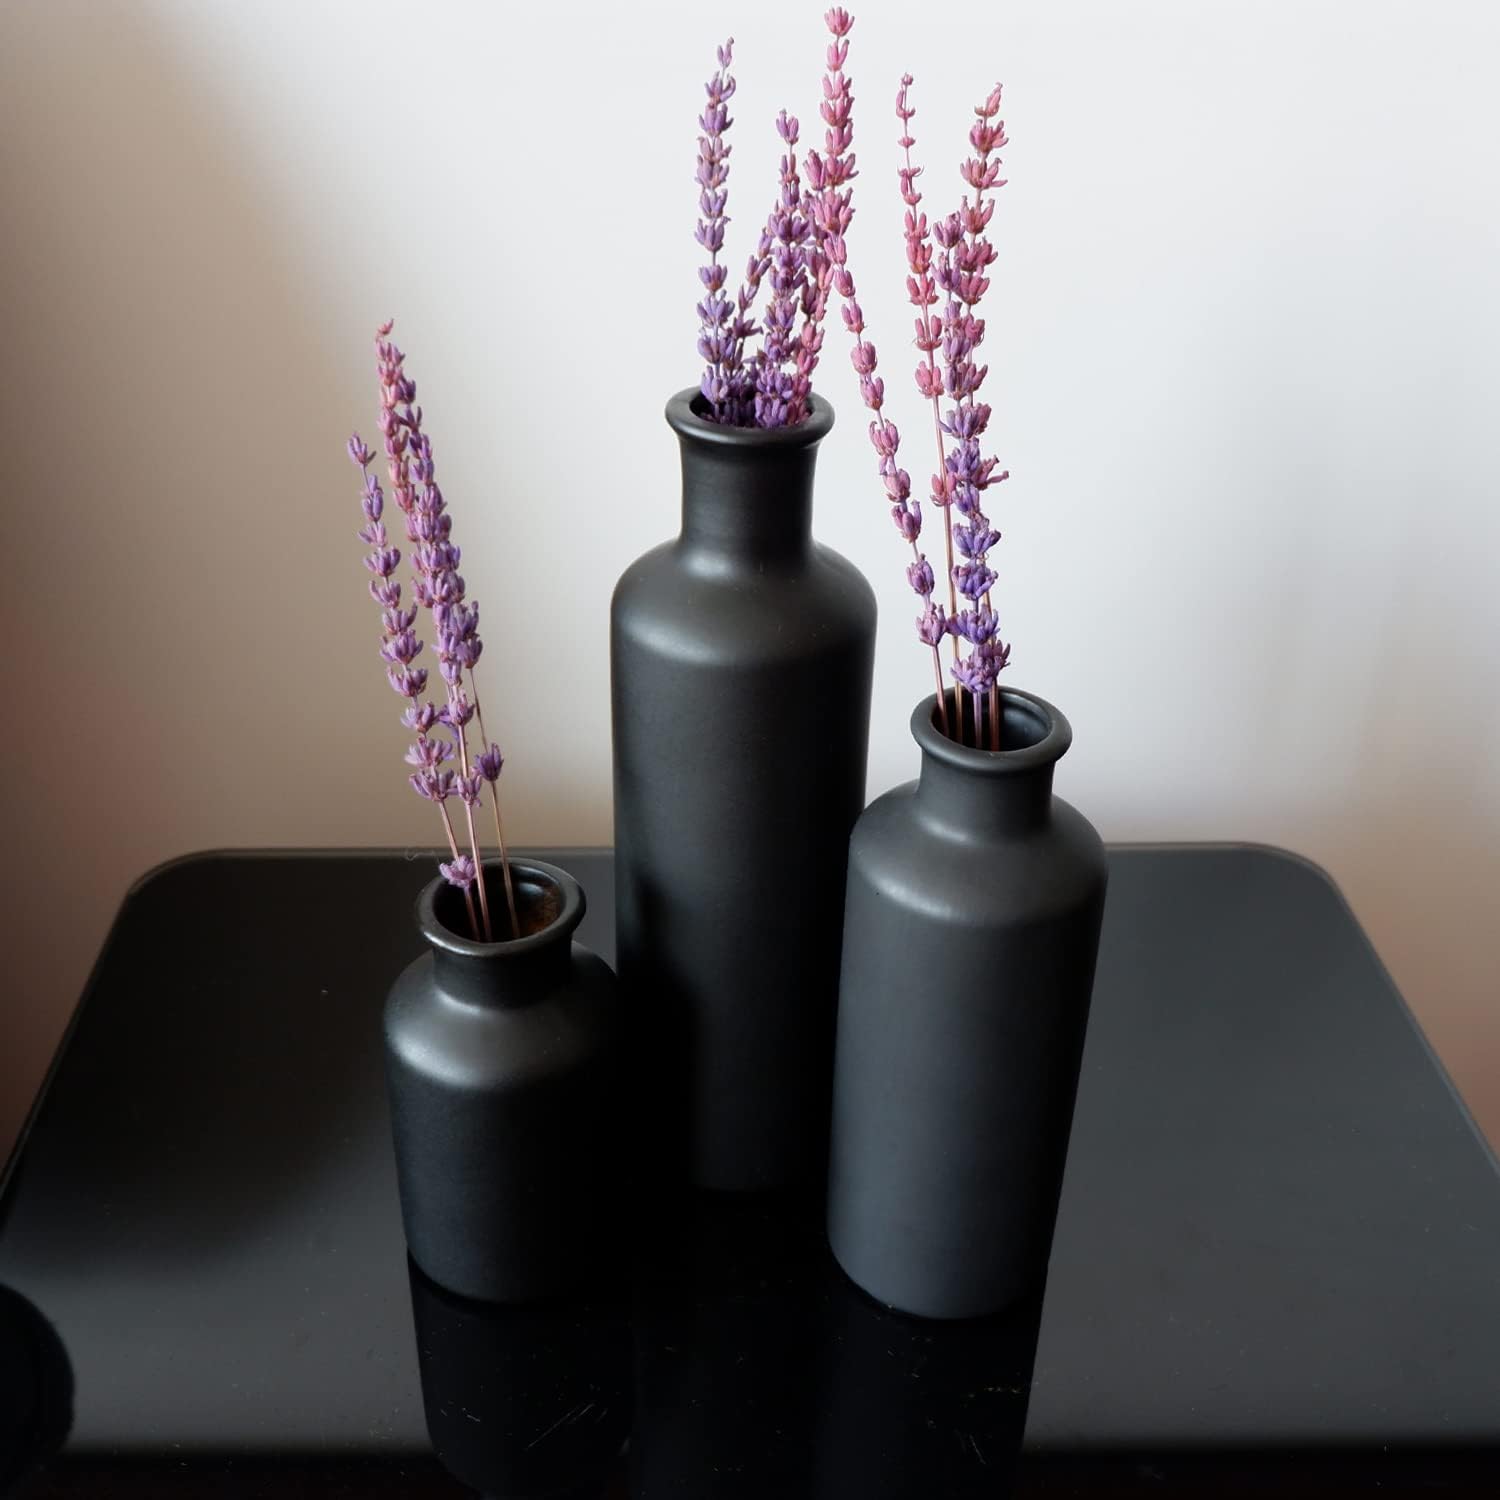 Matte Black Ceramic Vase Set, 3 Small Rustic Decorative Vases for